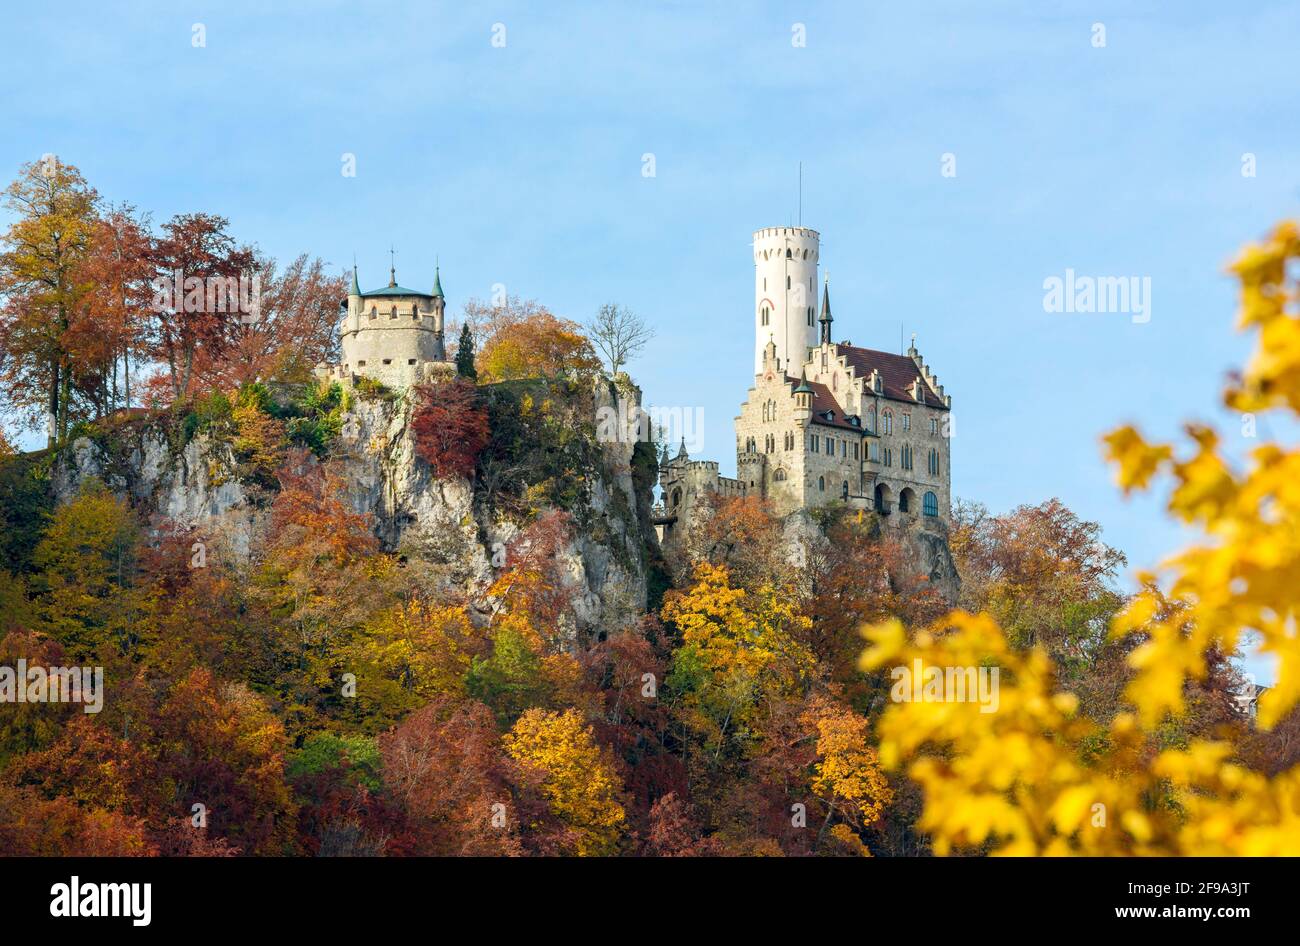 Deutschland, Baden-Württemberg, Lichtenstein - Honau, Schloss Lichtenstein, das Märchenschloss der Herzöge, Grafen von Württemberg und Urach, das im 19. Jahrhundert auf steilen Felsen erbaut wurde, ist ein beliebtes Ausflugsziel. Stockfoto